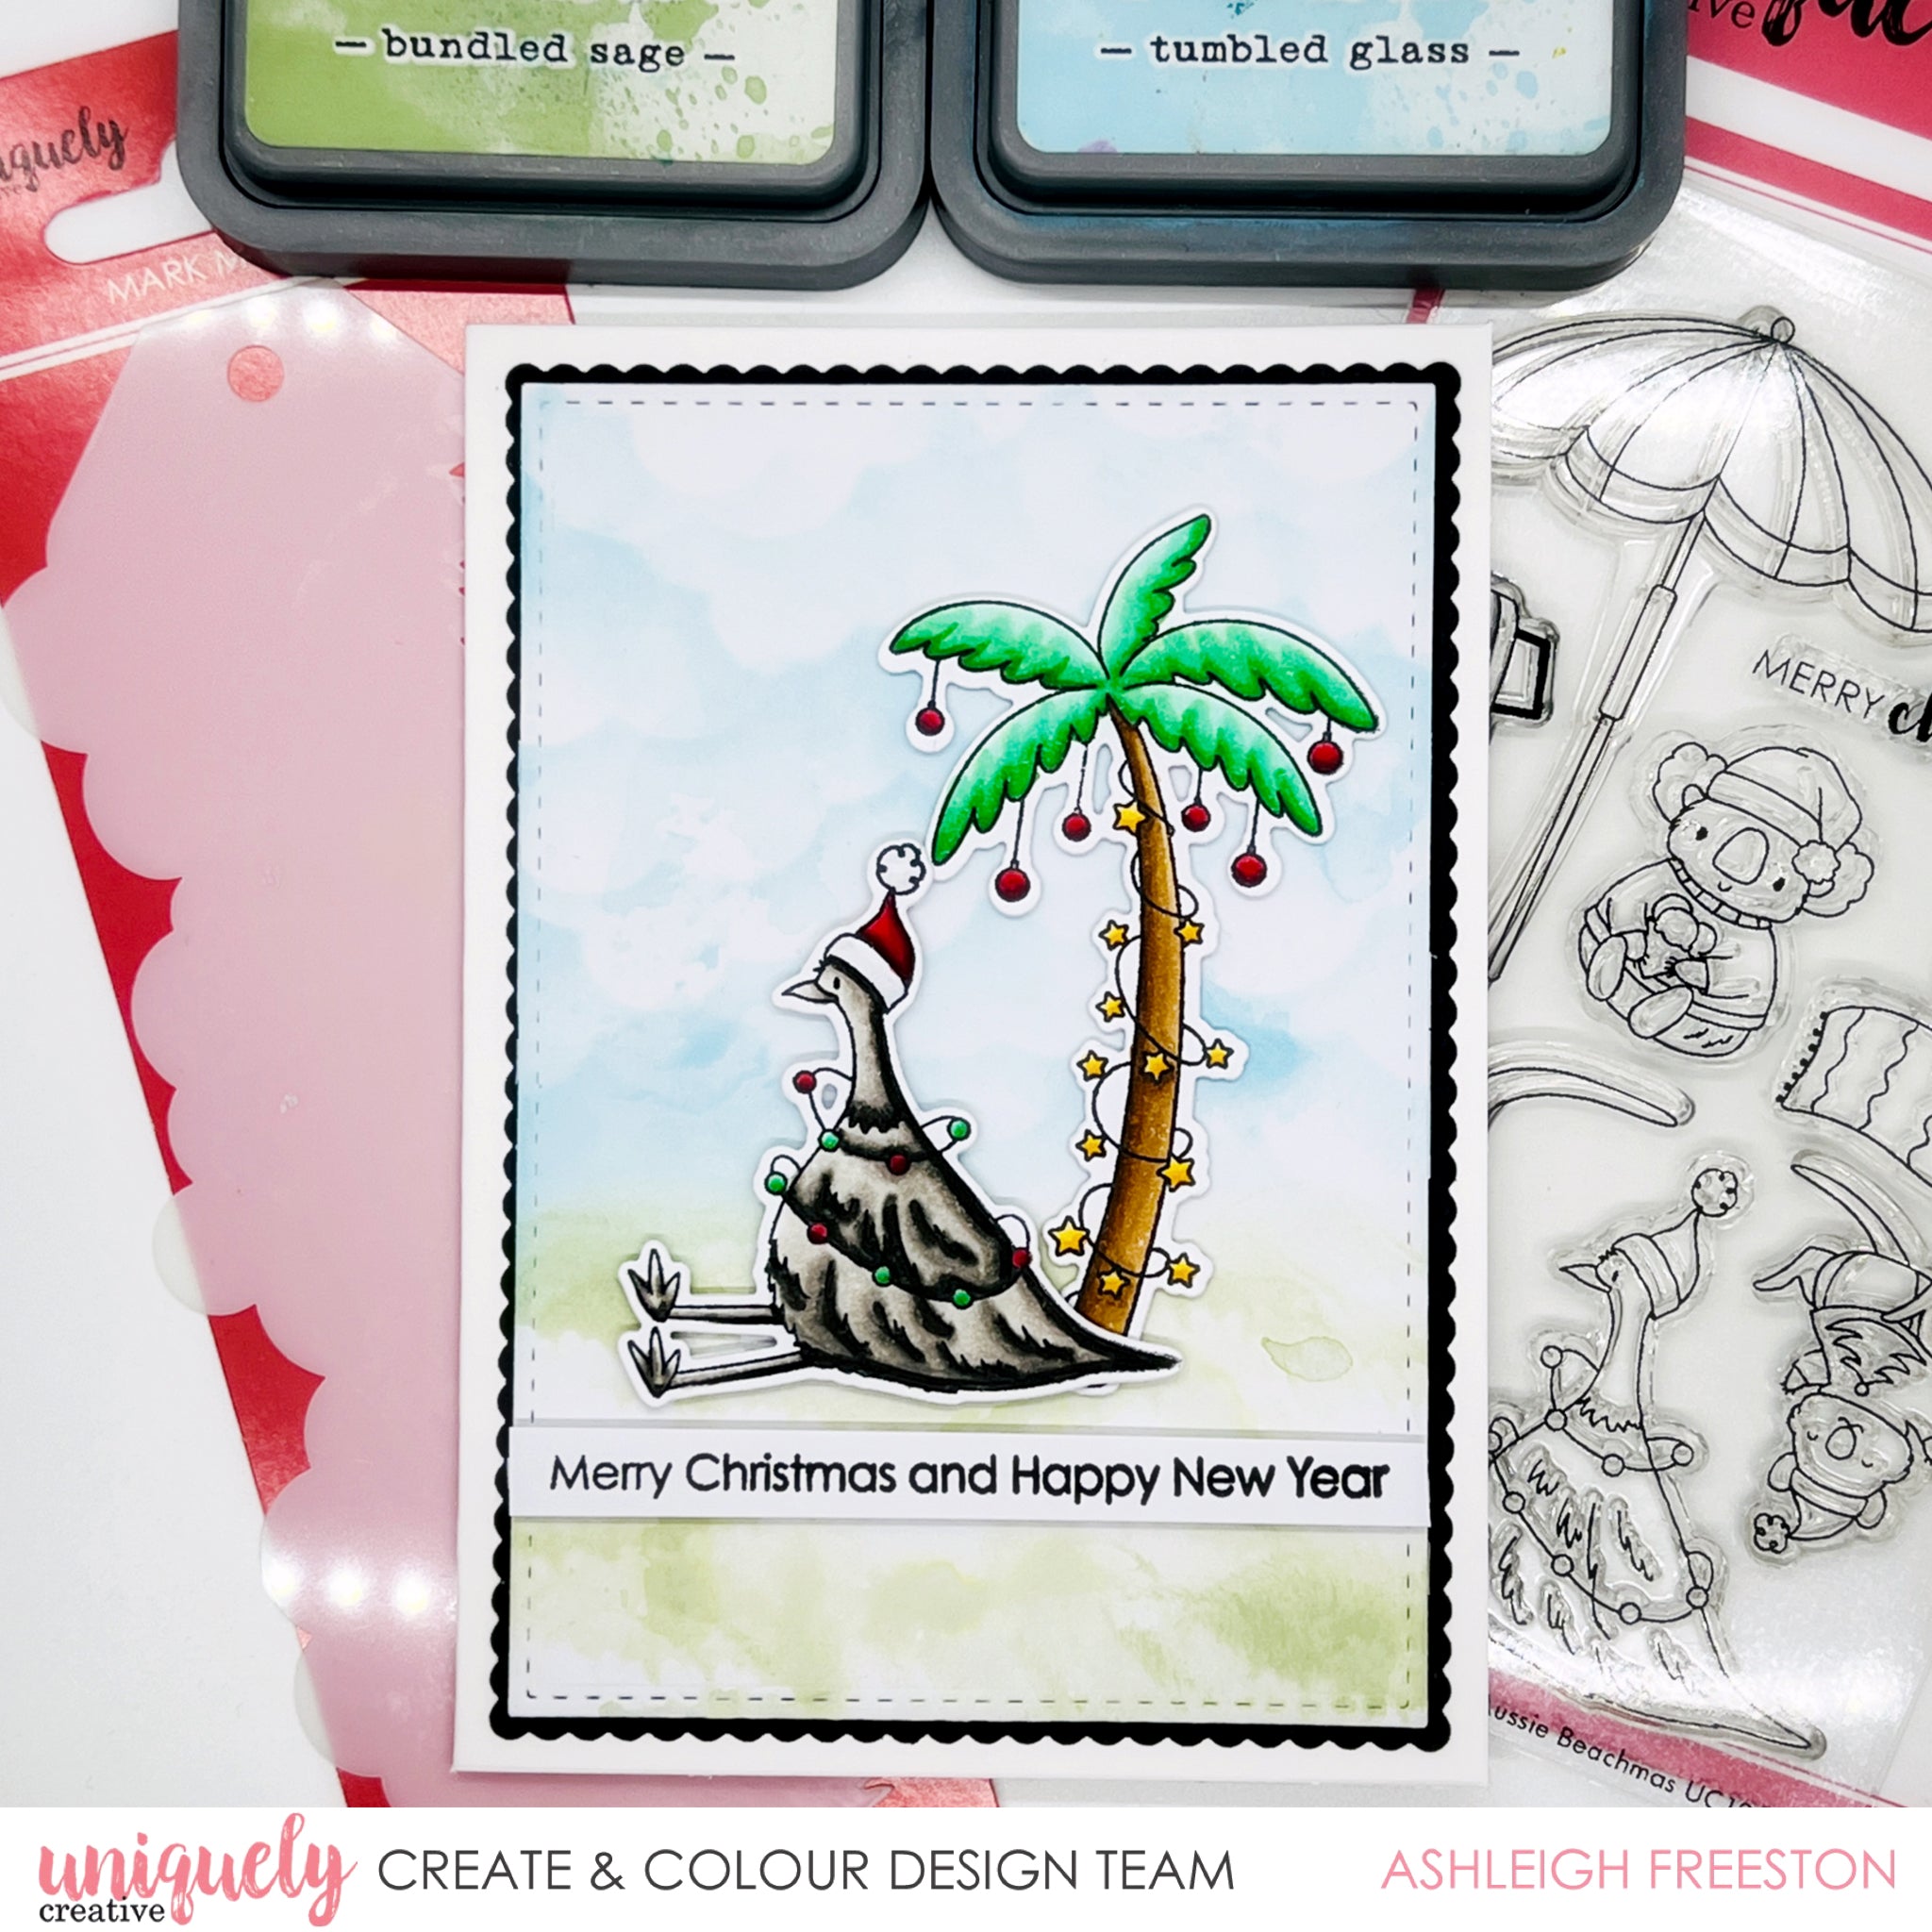 Uniquely Creative - Aussie Beachmas Stamp